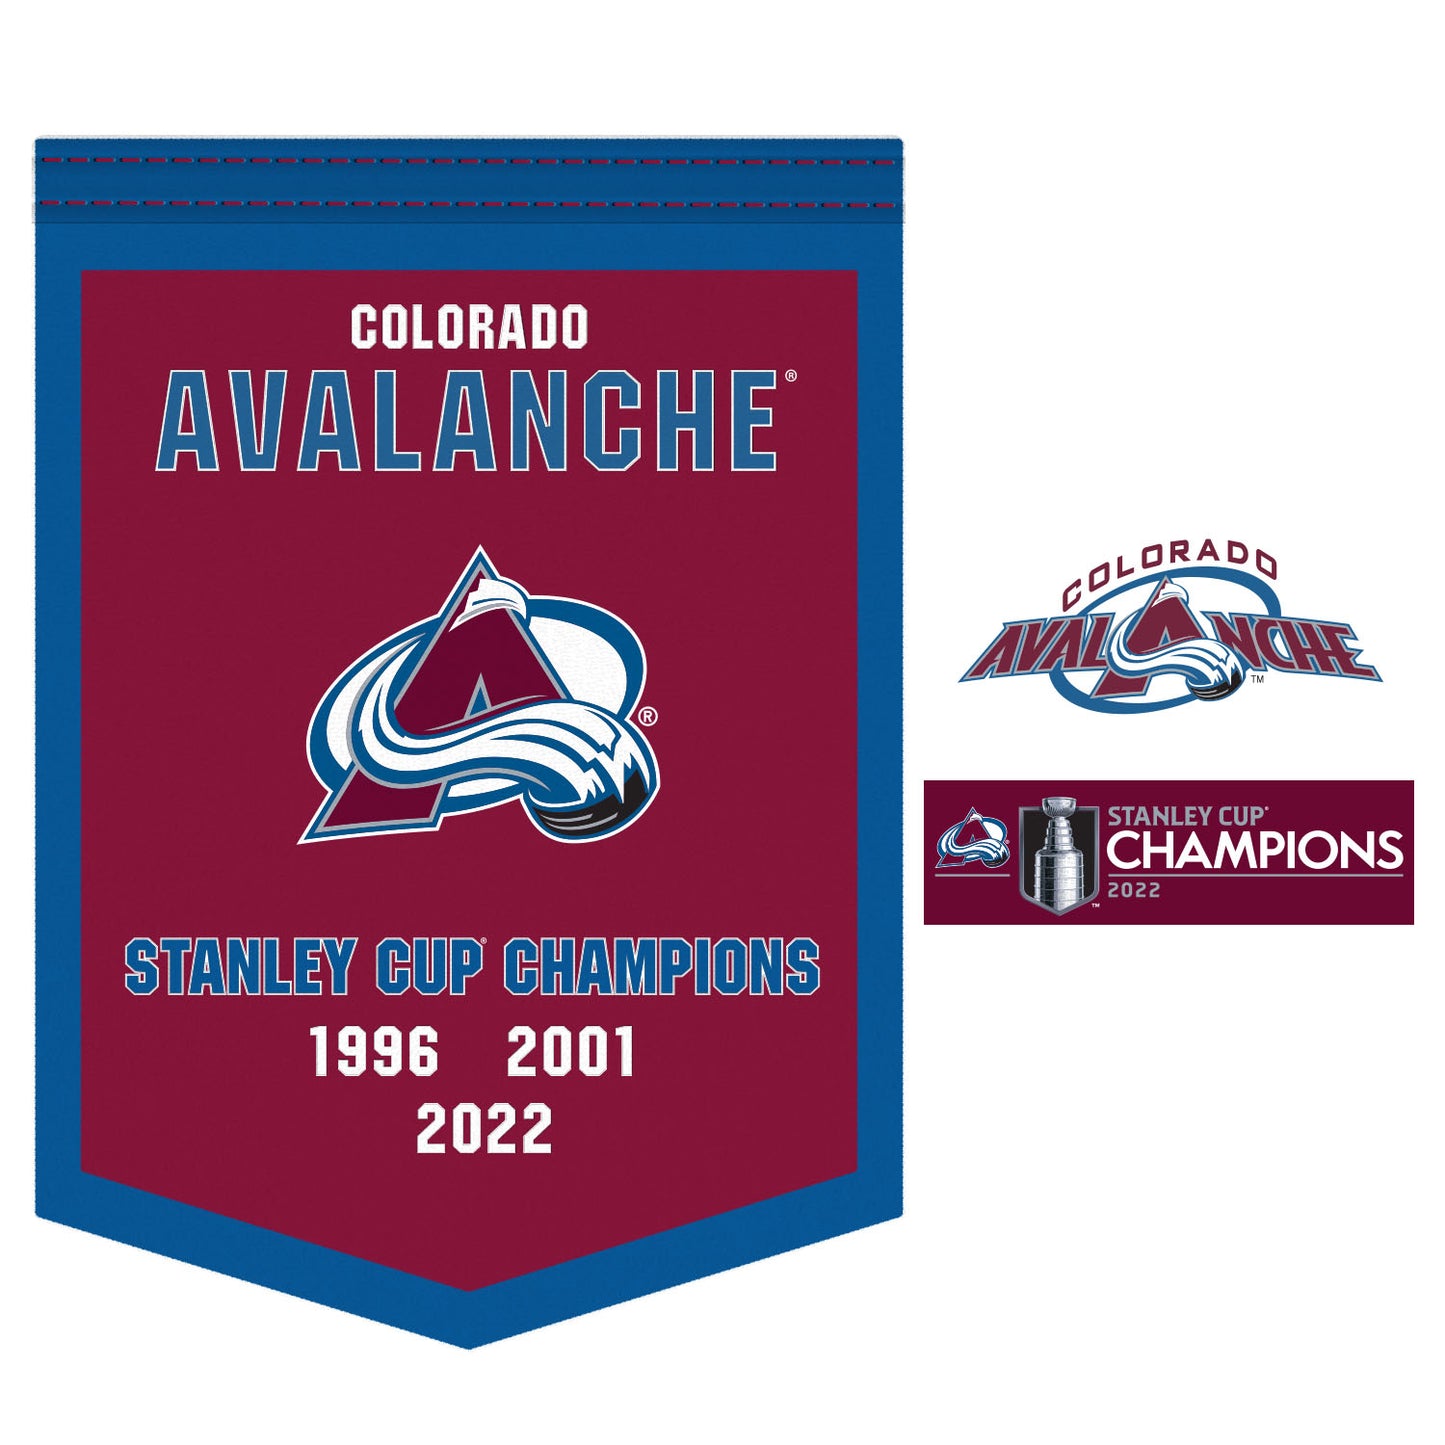 Colorado Avalanche - Stanley Cup